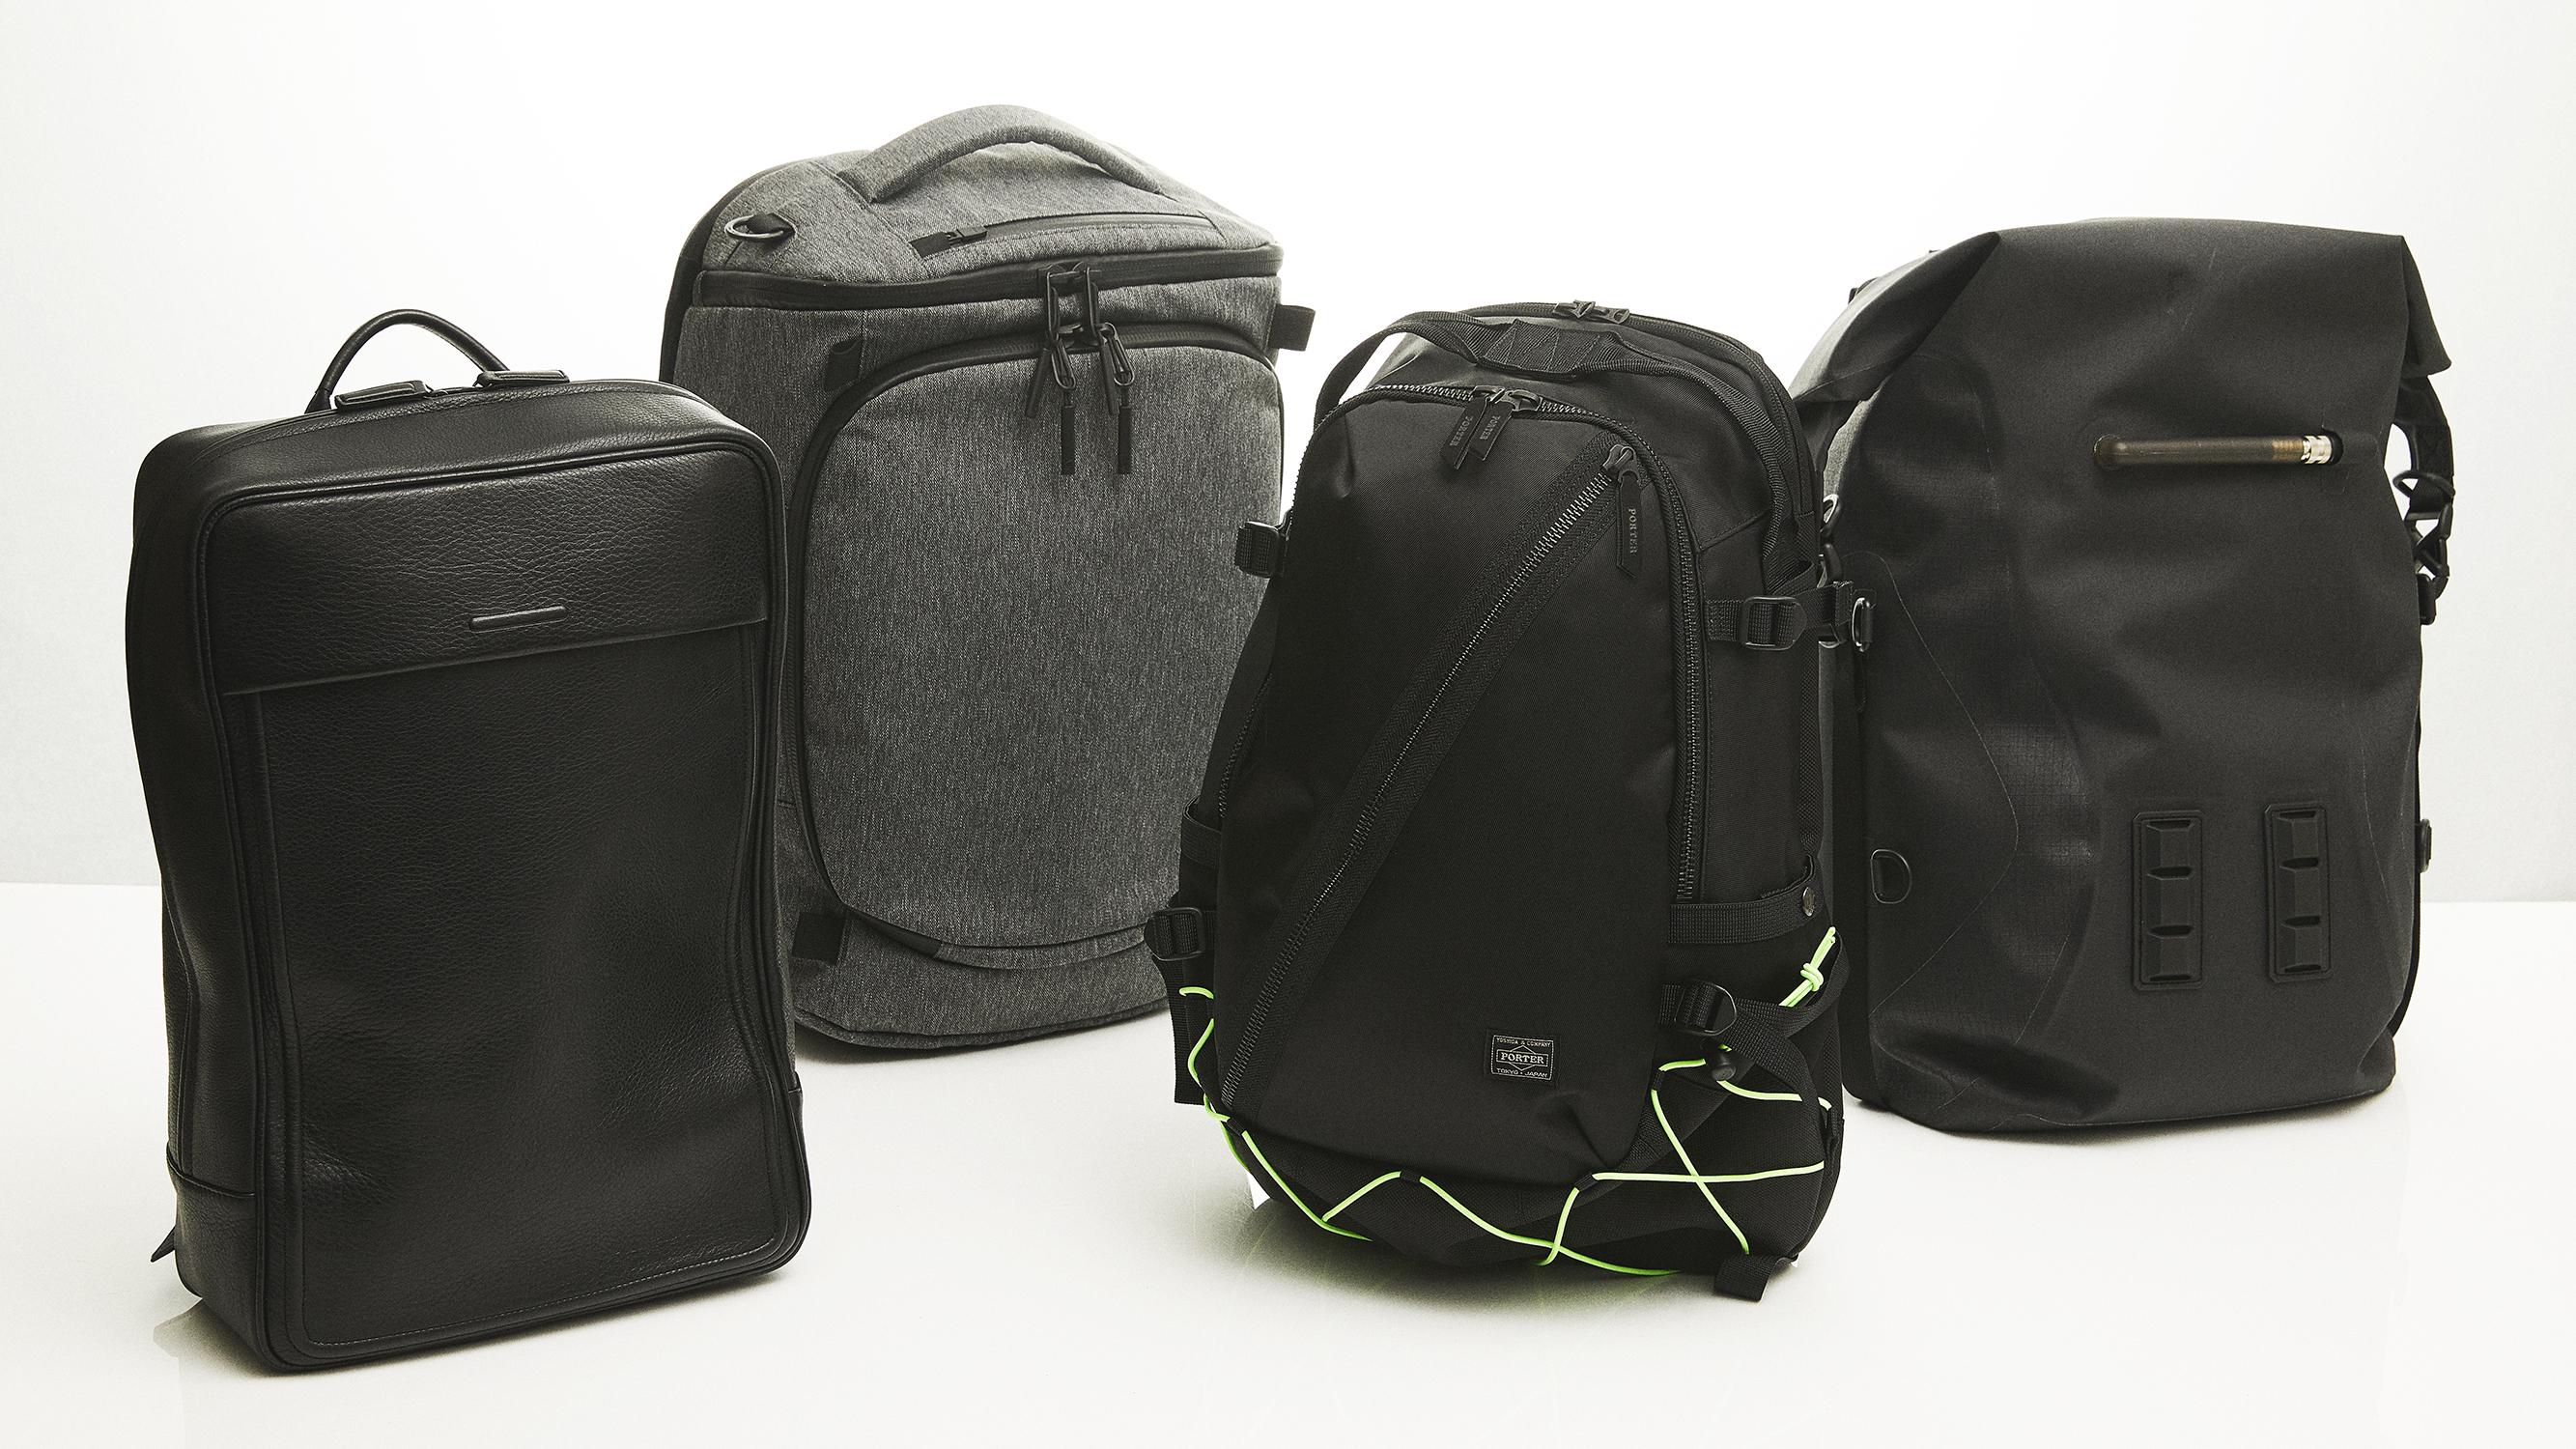 バッグ専業ブランドのバックパック4選。予想外の素材とコンセプトで